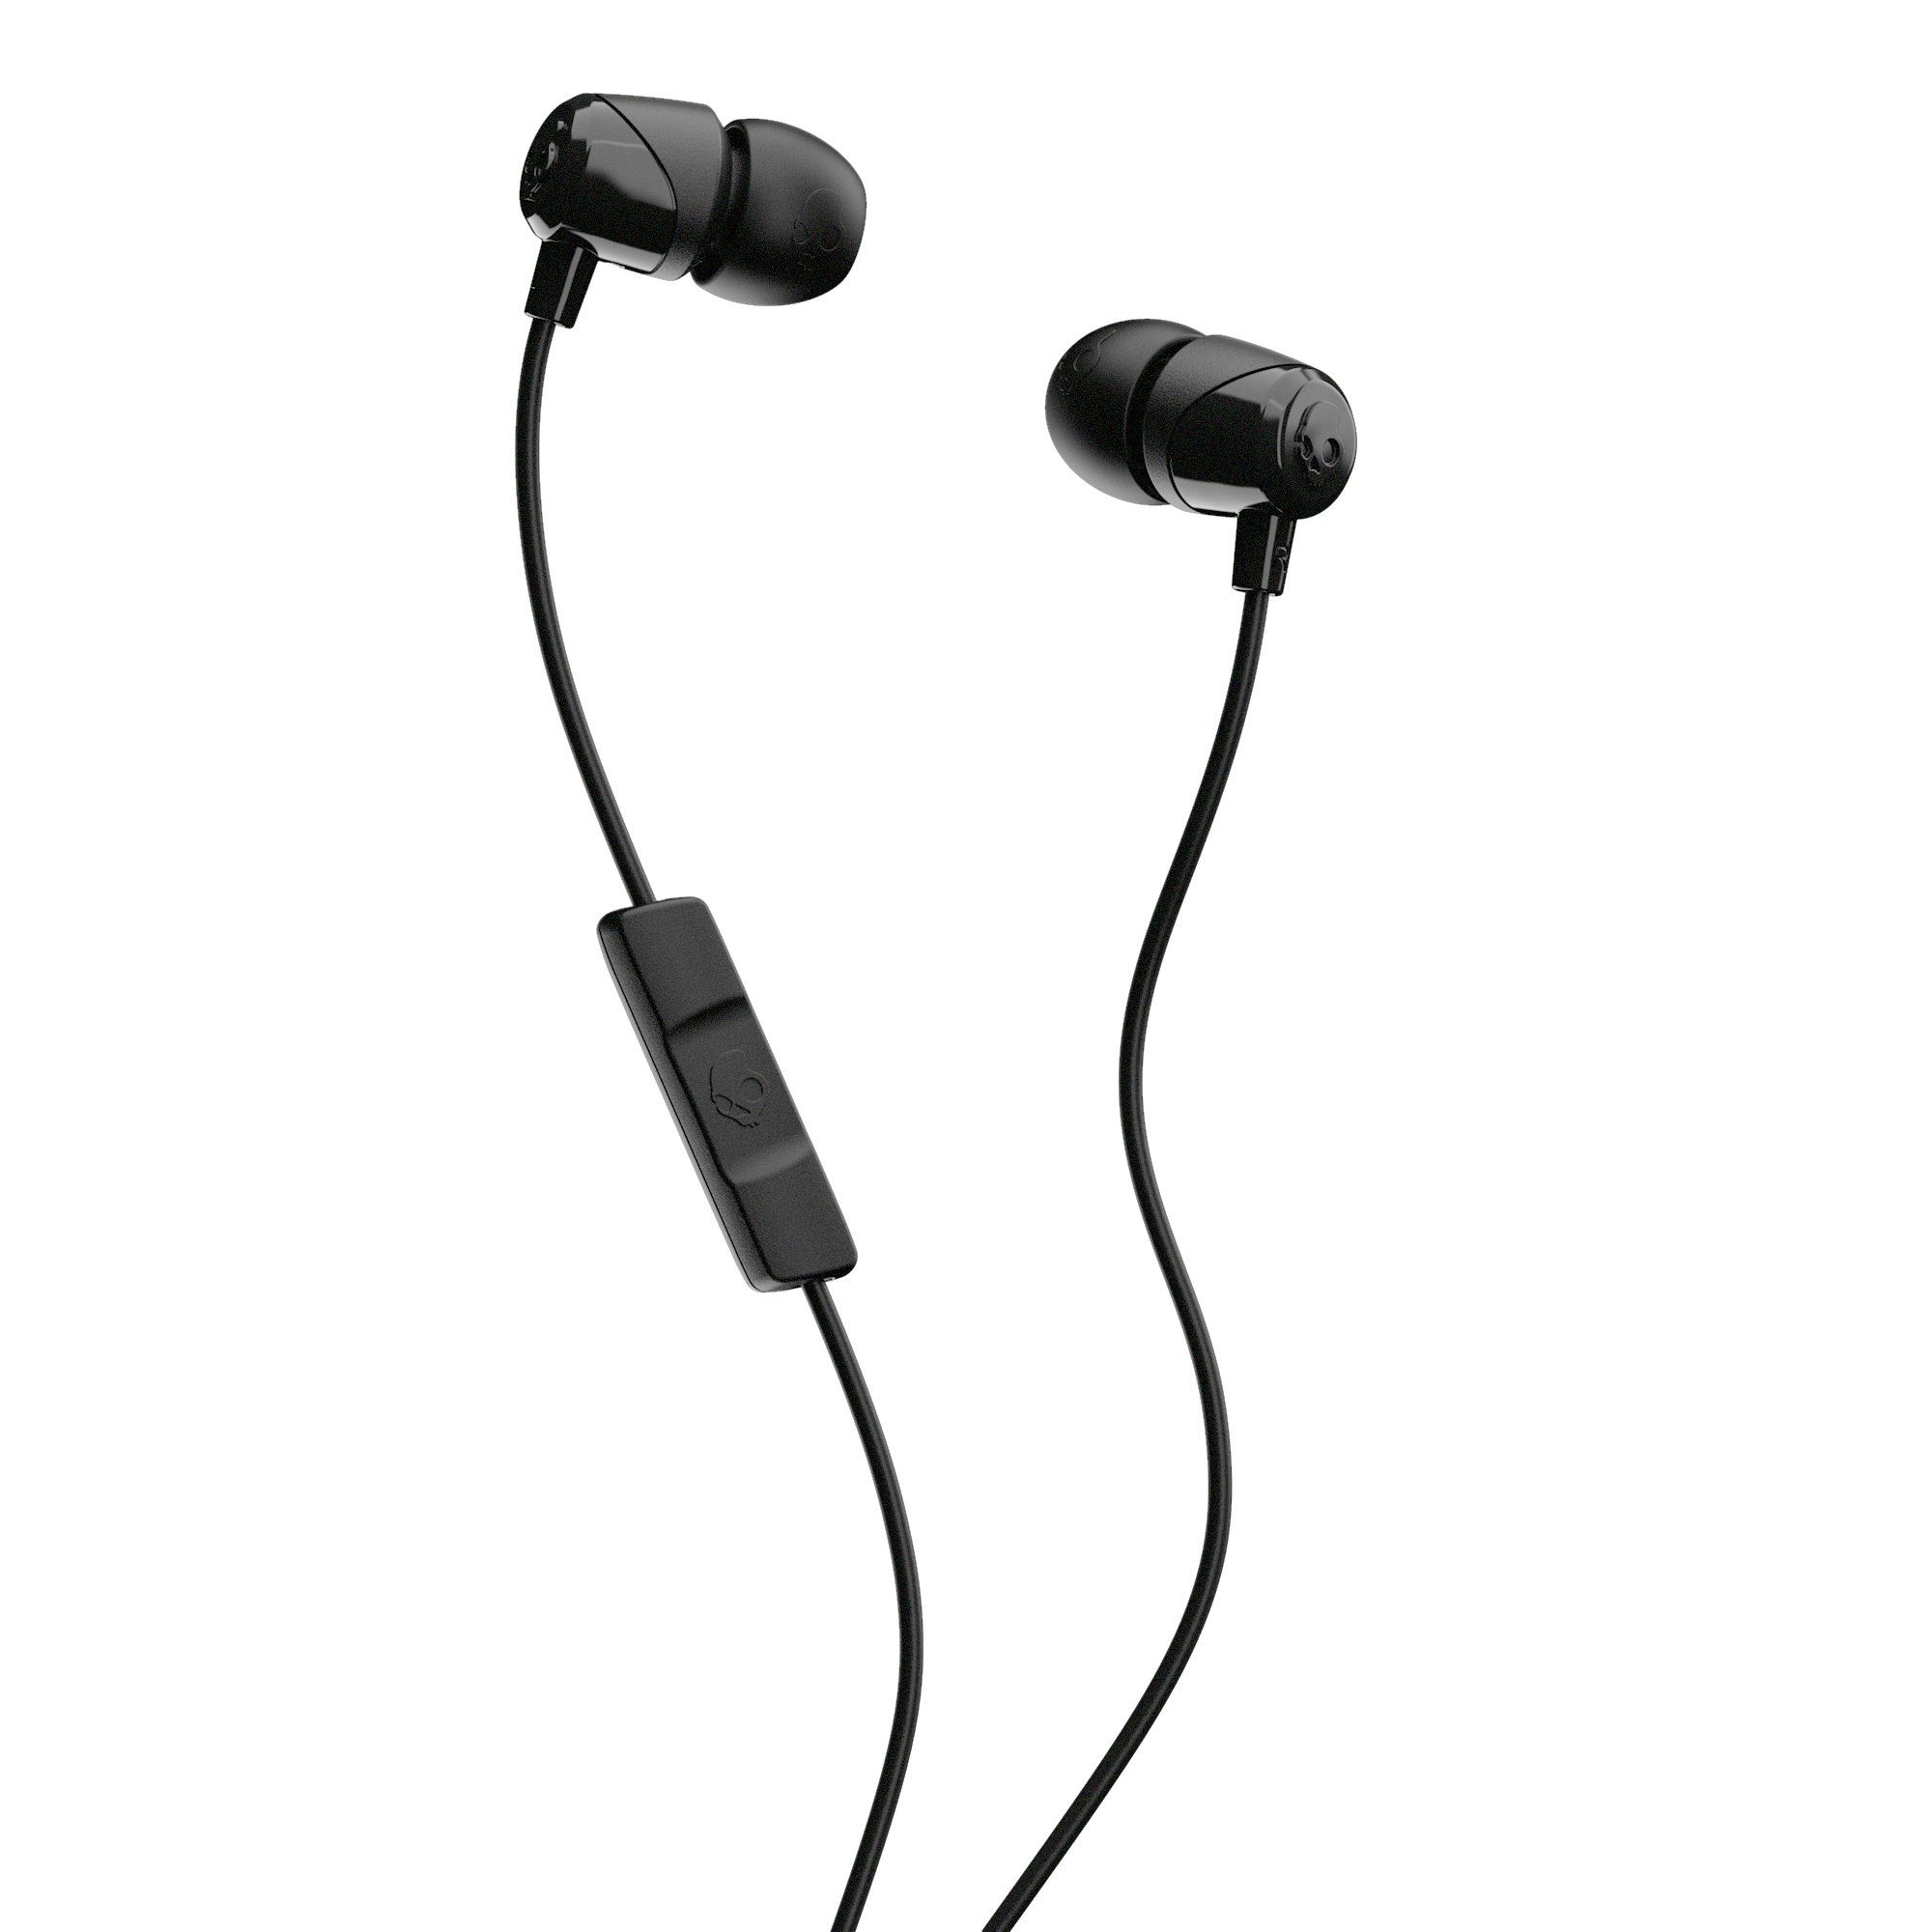 stabiles (Stilvolle Kabel!, und Supreme Schwarz W/MIC Kopfhörer!, JIB Sound-System!, Flexibles von Unterdrückung Skullcandy 1 In-Ear Umgebungslärm) Headset Passform!, IN-EAR In-Ear-Kopfhörer Komfortable